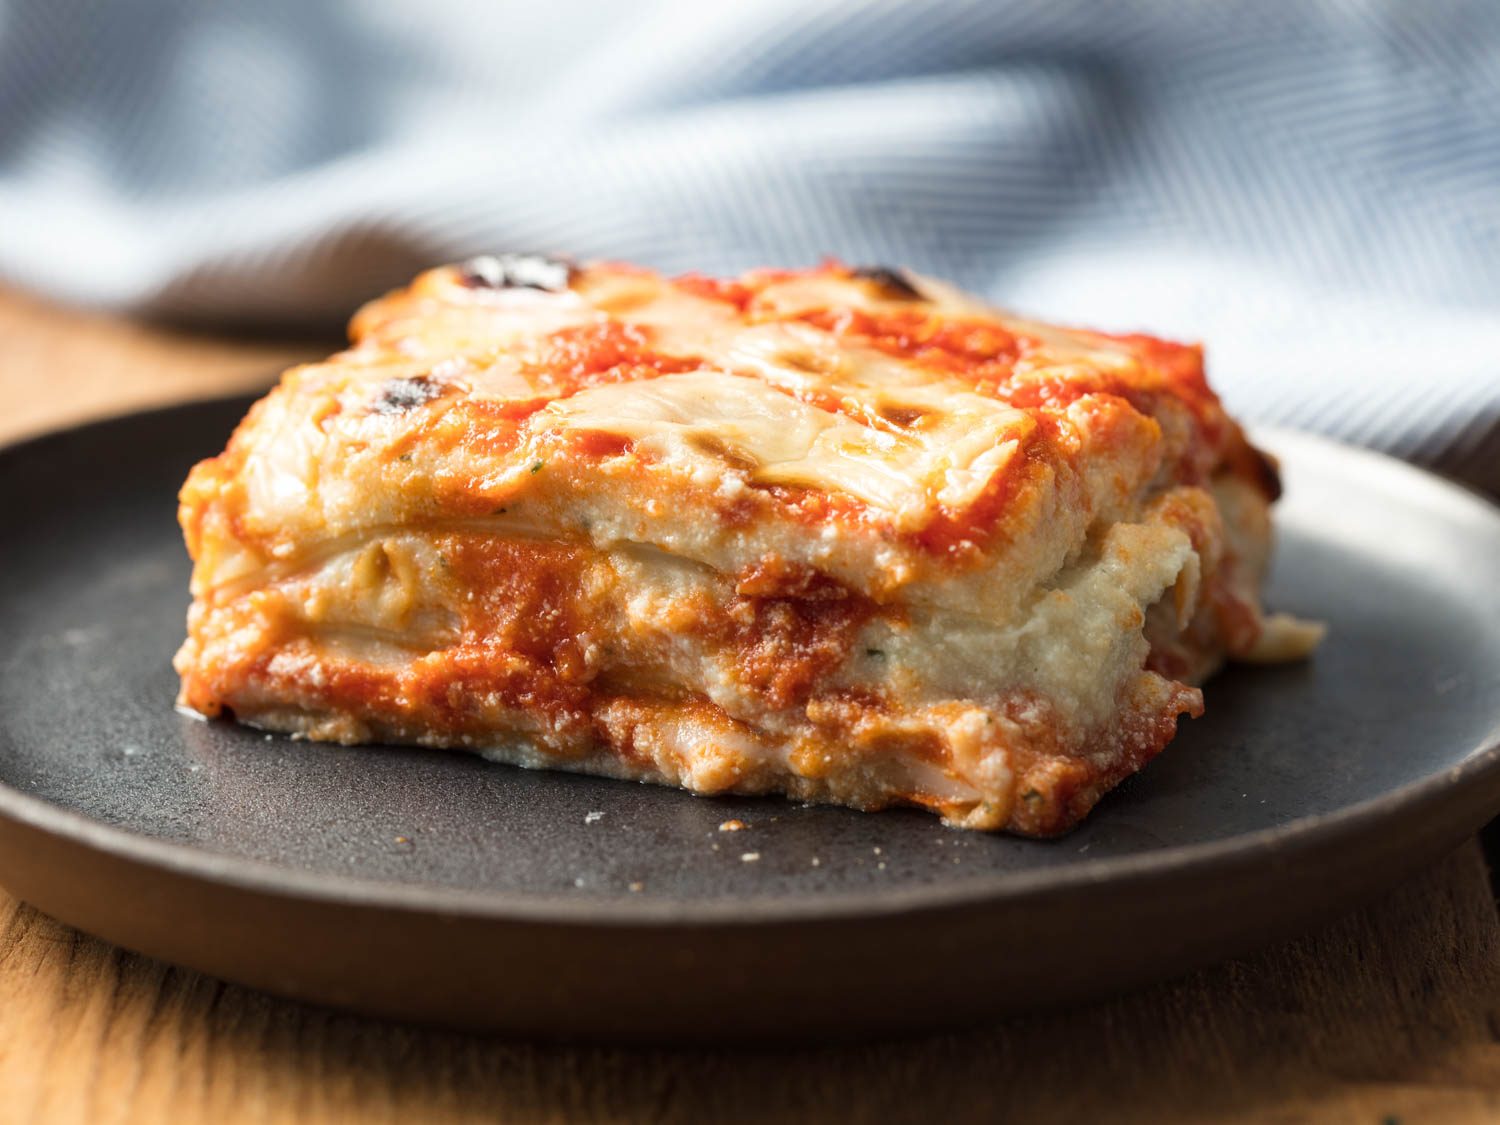 Lasagna — That Pie Place Burlington